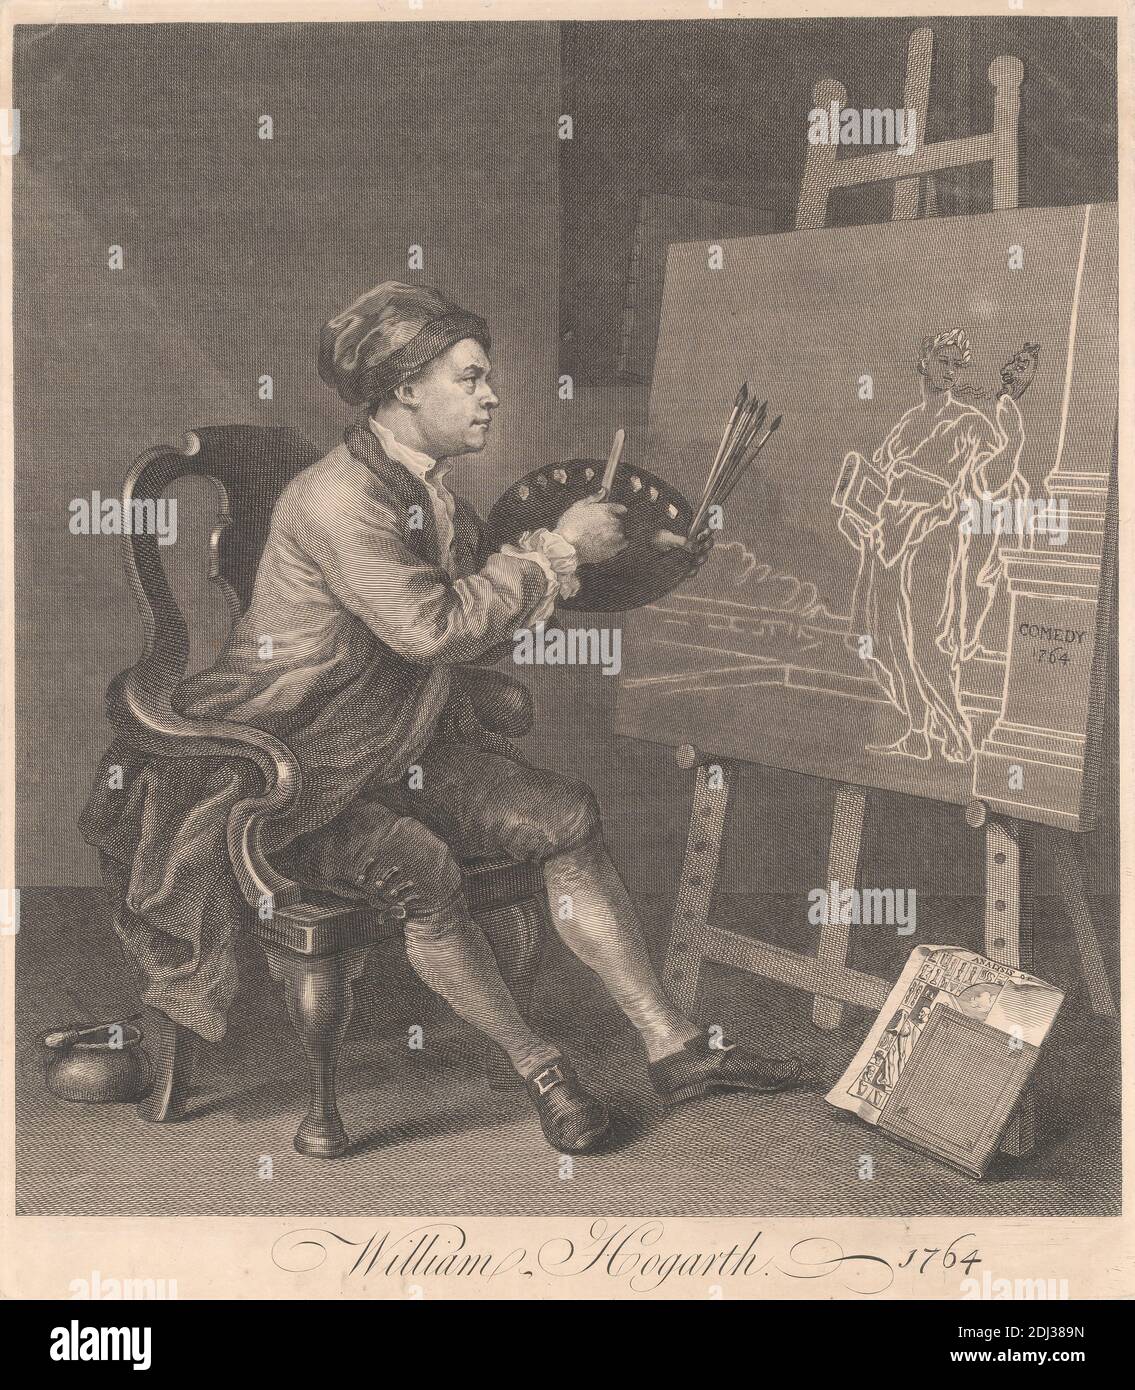 Pittura di Hogarth il musetto comico, Stampa fatta da William Hogarth, 1697–1764, inglese, 1764, incisione di linea su carta leggermente spessa e leggermente testurizzata, carta crema, foglio: 16 x 14 pollici (40.6 x 35.6 cm), piatto: 15 7/8 x 13 7/8 pollici (40.3 x 35.2 cm), e immagine: 14 1/2 x 13 1/2 pollici (36.8 x 34.3 cm), alterazione, artista, bellezza, sedia, commedia, cavalletto, uomo, maschera, pennello, ritratto, tristezza, satiro, trattato Foto Stock